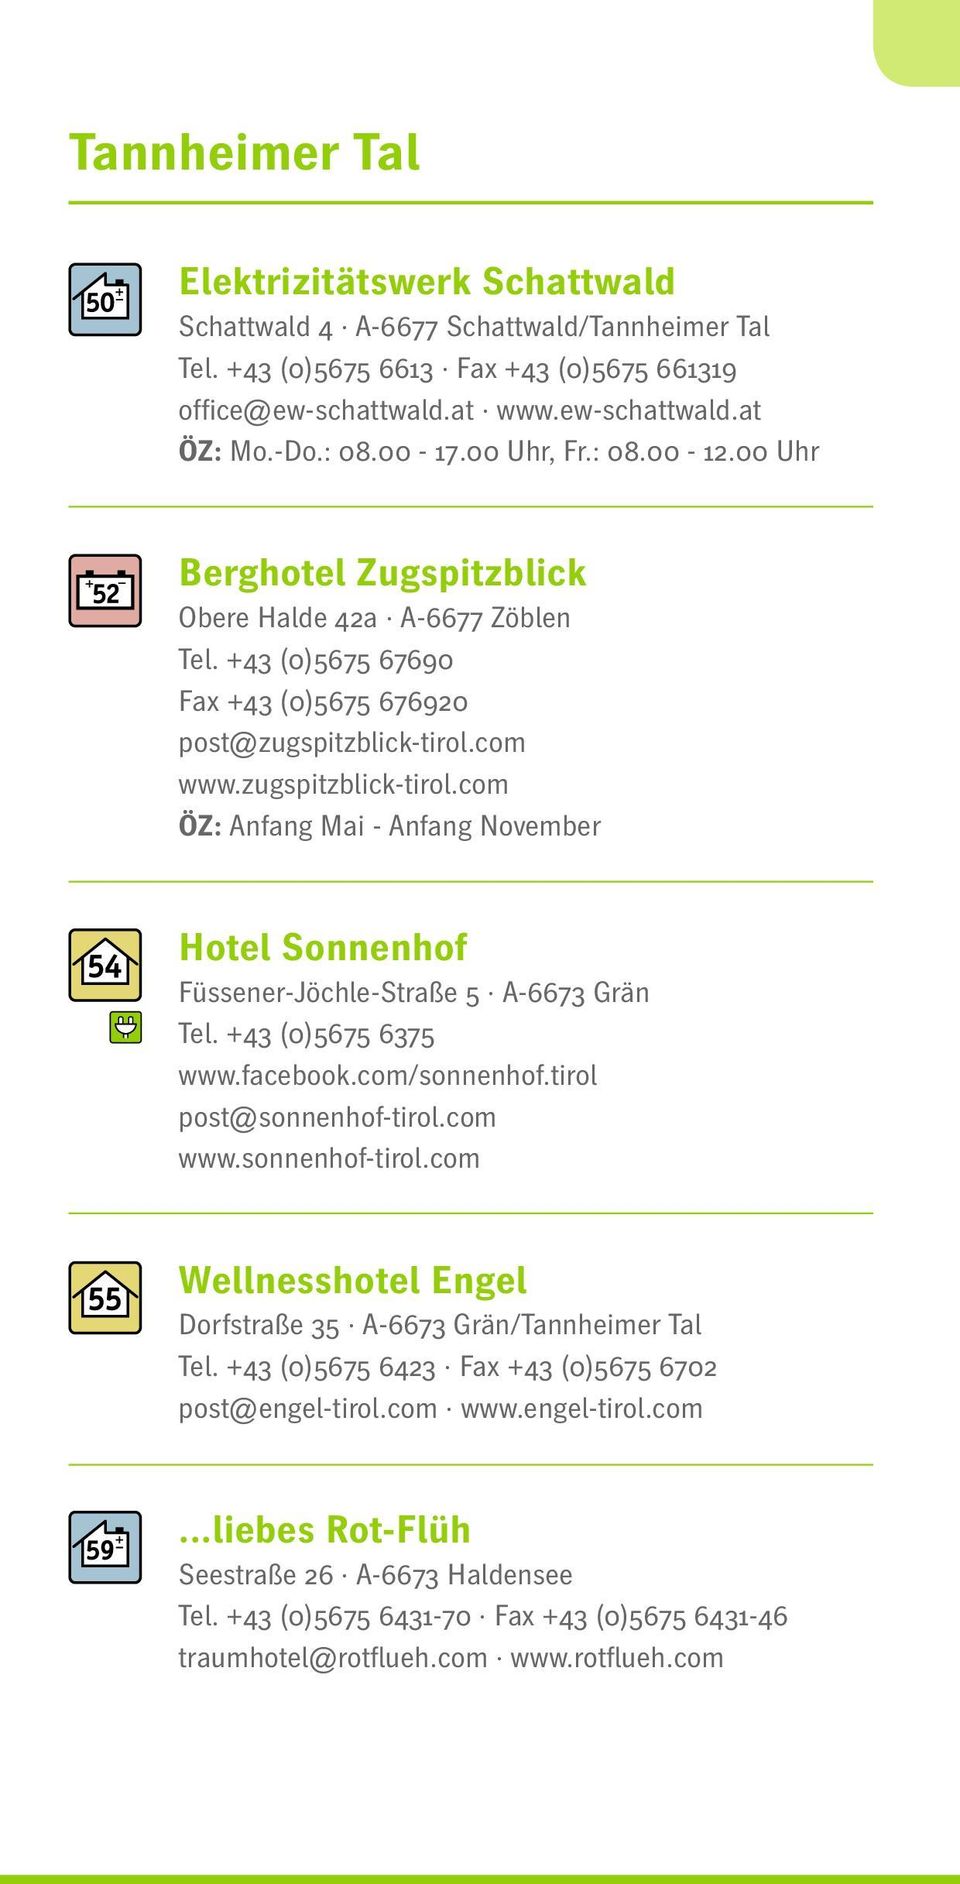 com www.zugspitzblick-tirol.com ÖZ: Anfang Mai - Anfang November Hotel Sonnenhof Füssener-Jöchle-Straße 5 A-6673 Grän Tel. +43 (0)5675 6375 www.facebook.com/sonnenhof.tirol post@sonnenhof-tirol.